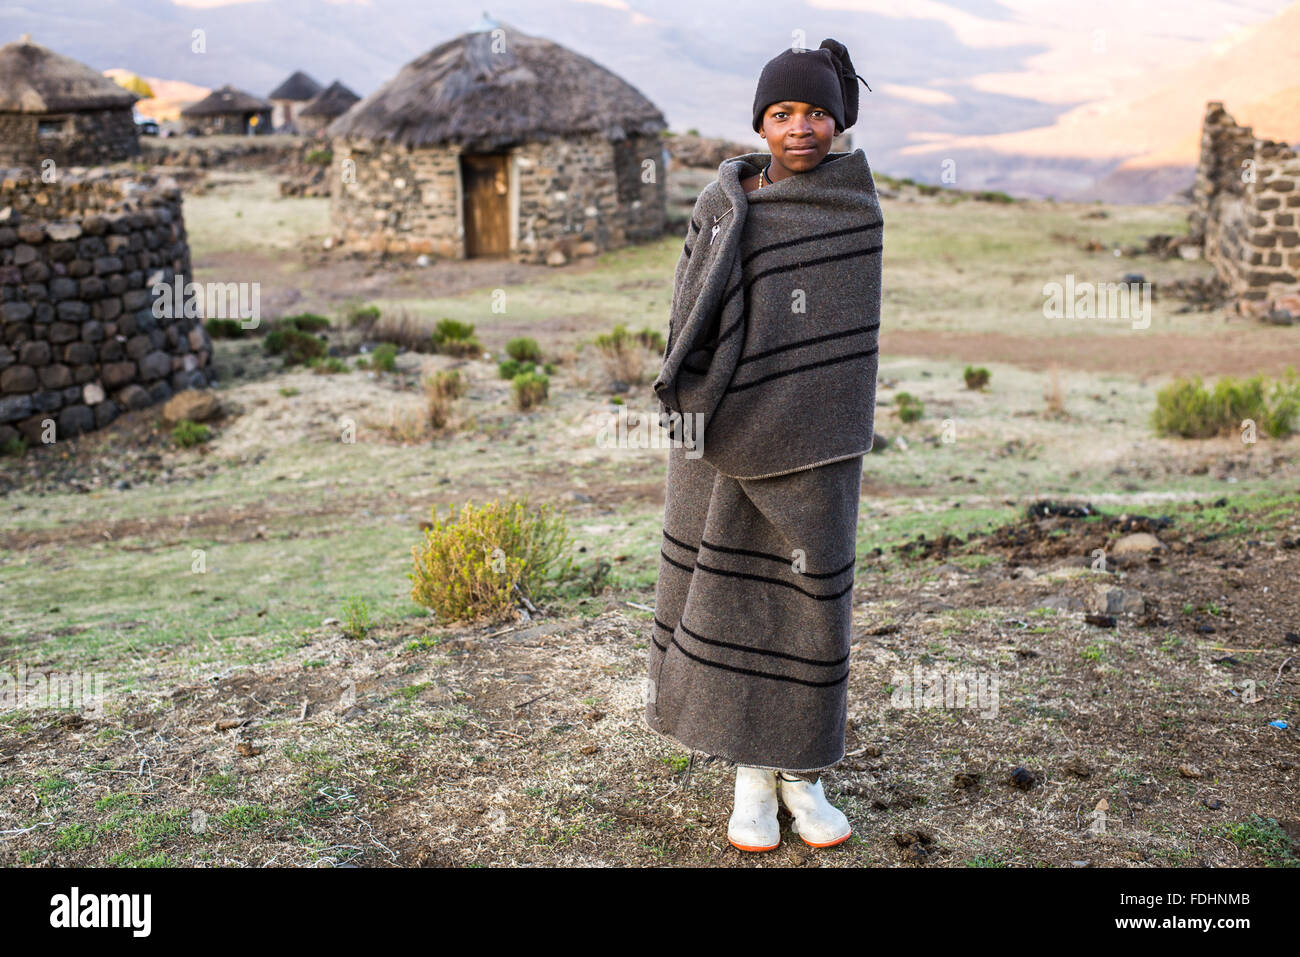 Jeune garçon enveloppé dans une couverture près d'une cabane en pierre au Lesotho, l'Afrique Banque D'Images